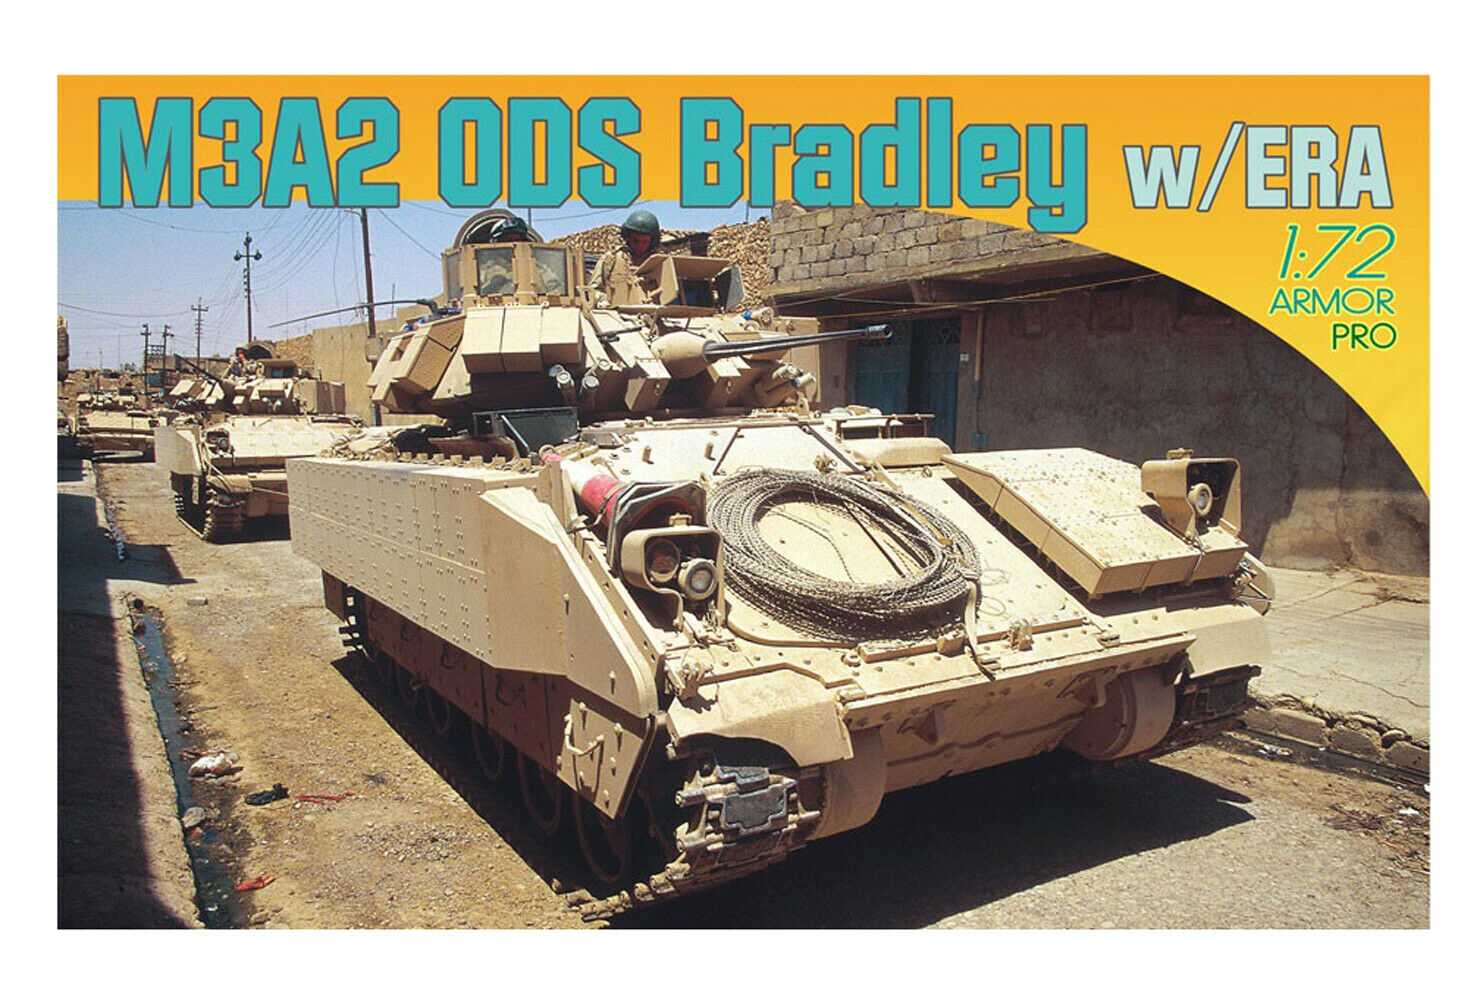 M3A2 ODS Bradley with ERA